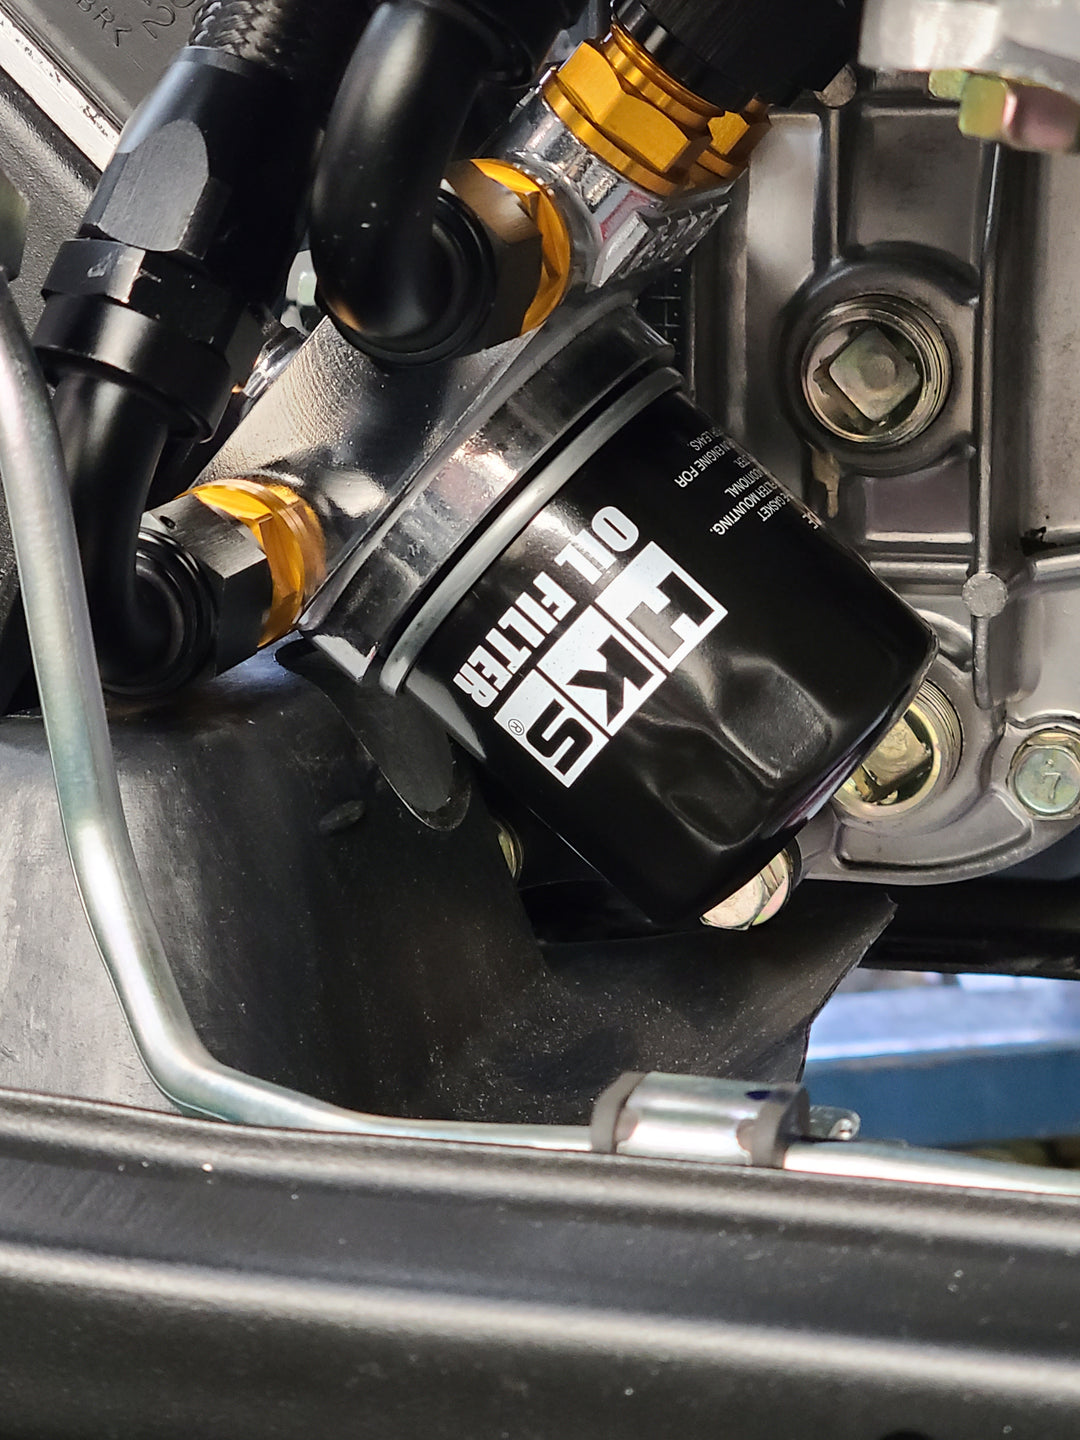 Skyline GTR oil filter relocation kit